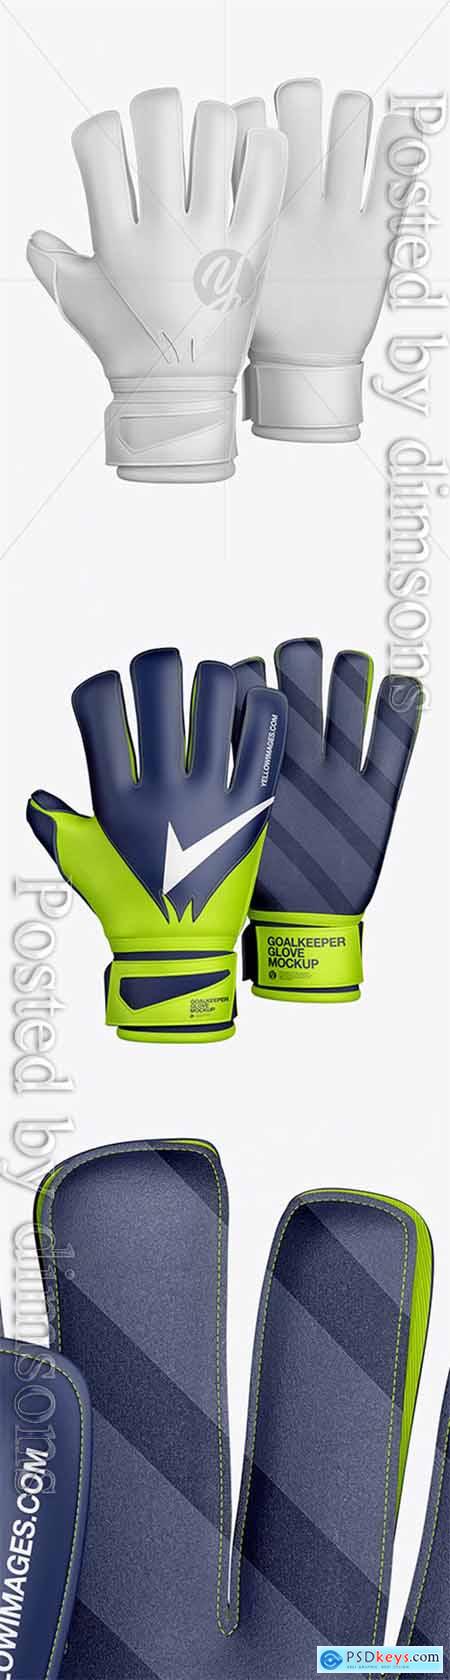 Download Goalkeeper Gloves Mockup » Free Download Photoshop Vector ...